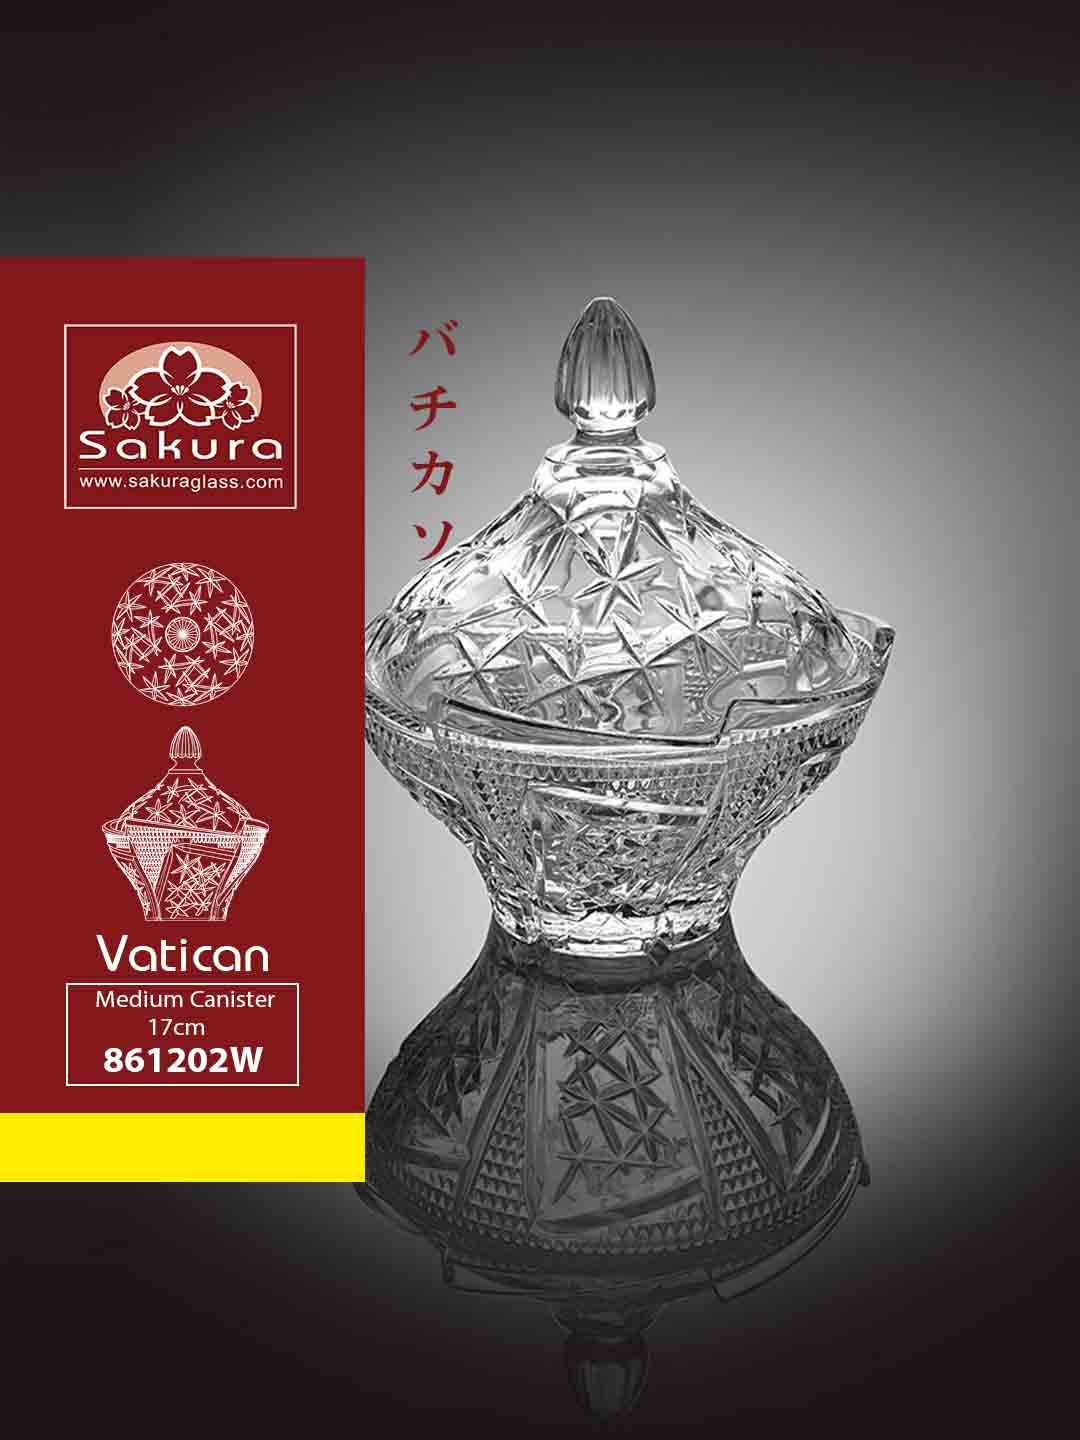 Sakura Product Vatican Medium Canister 17cm 861202W